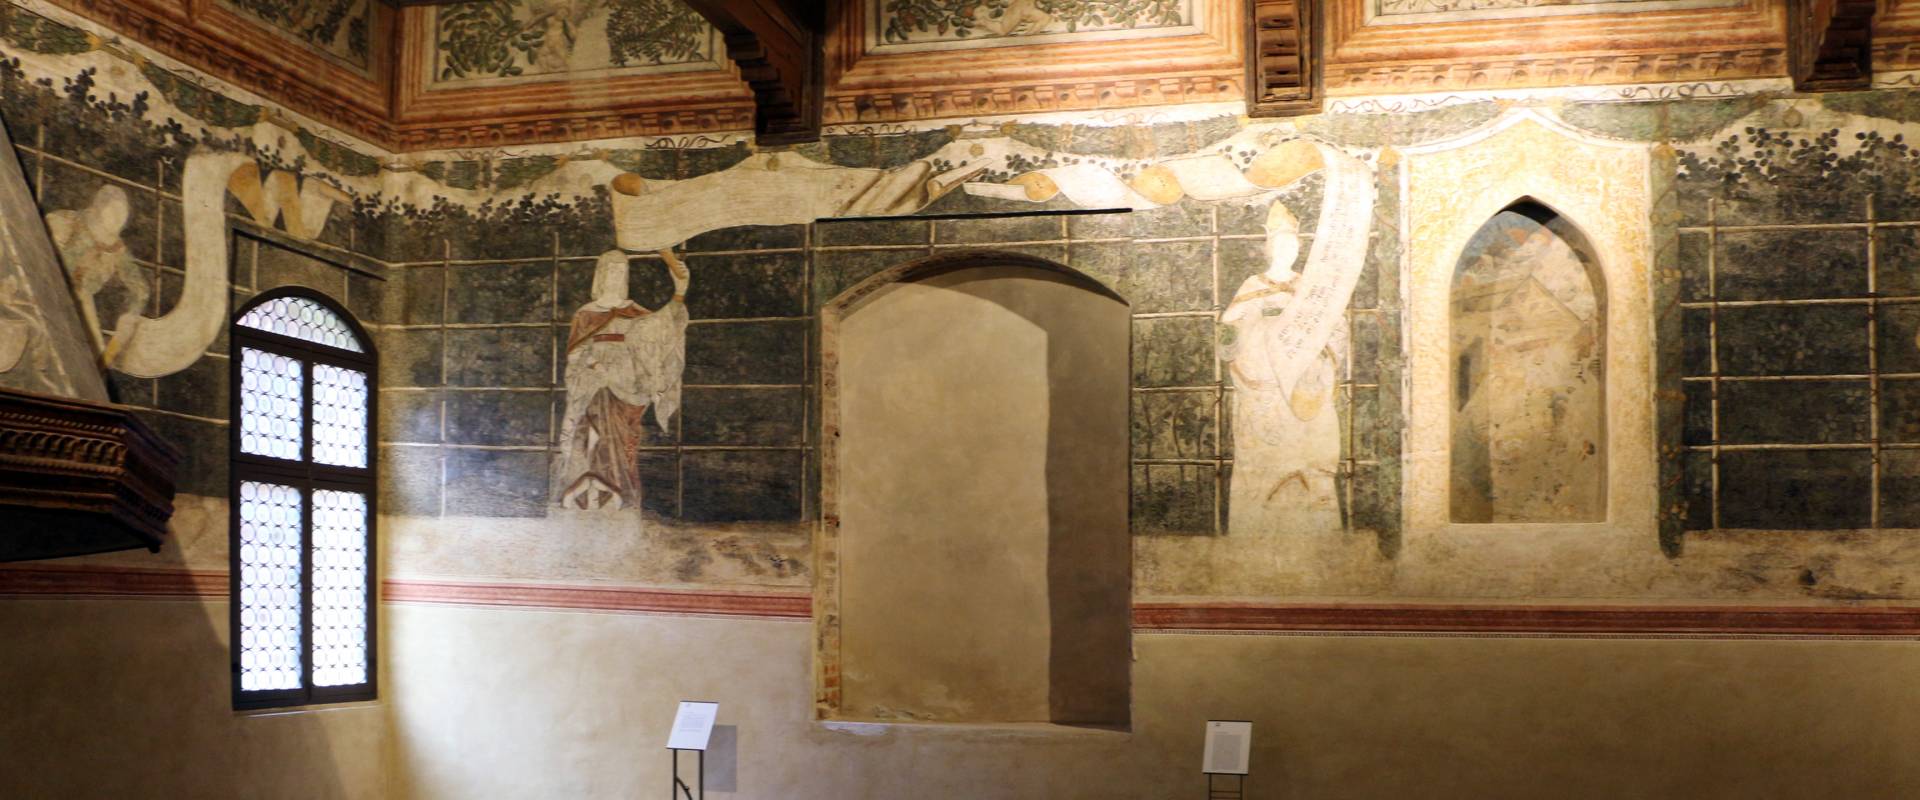 Casa romei, sala delle sibille, 1450 ca. 02 foto di Sailko